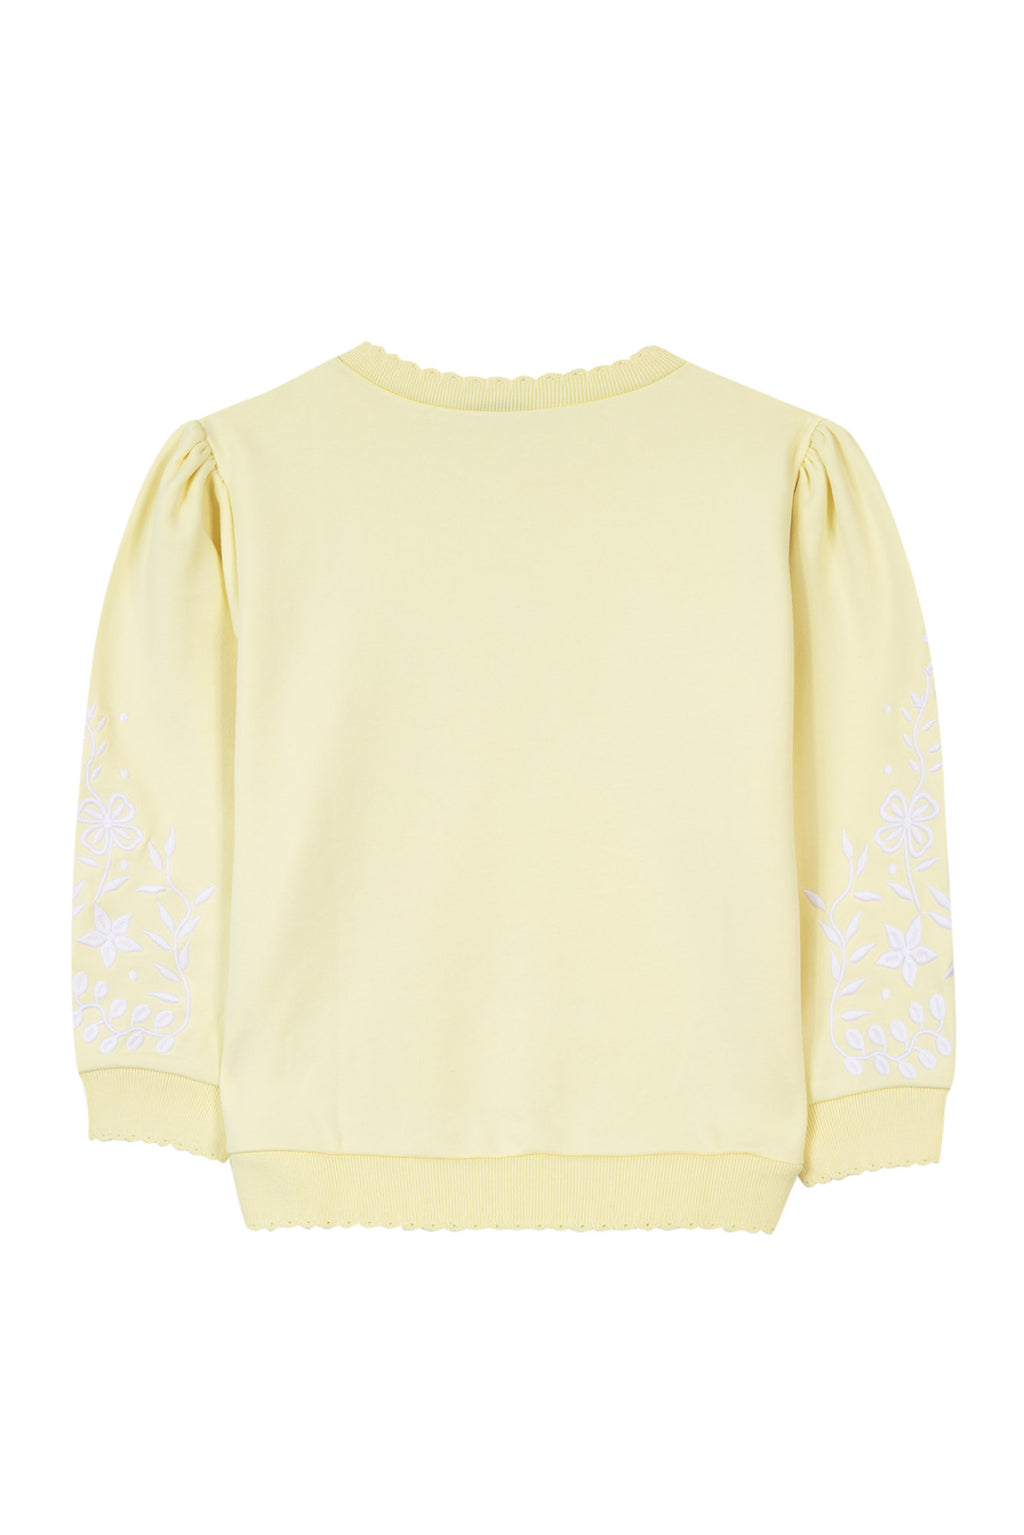 Sweatshirt - Yellow embroidery